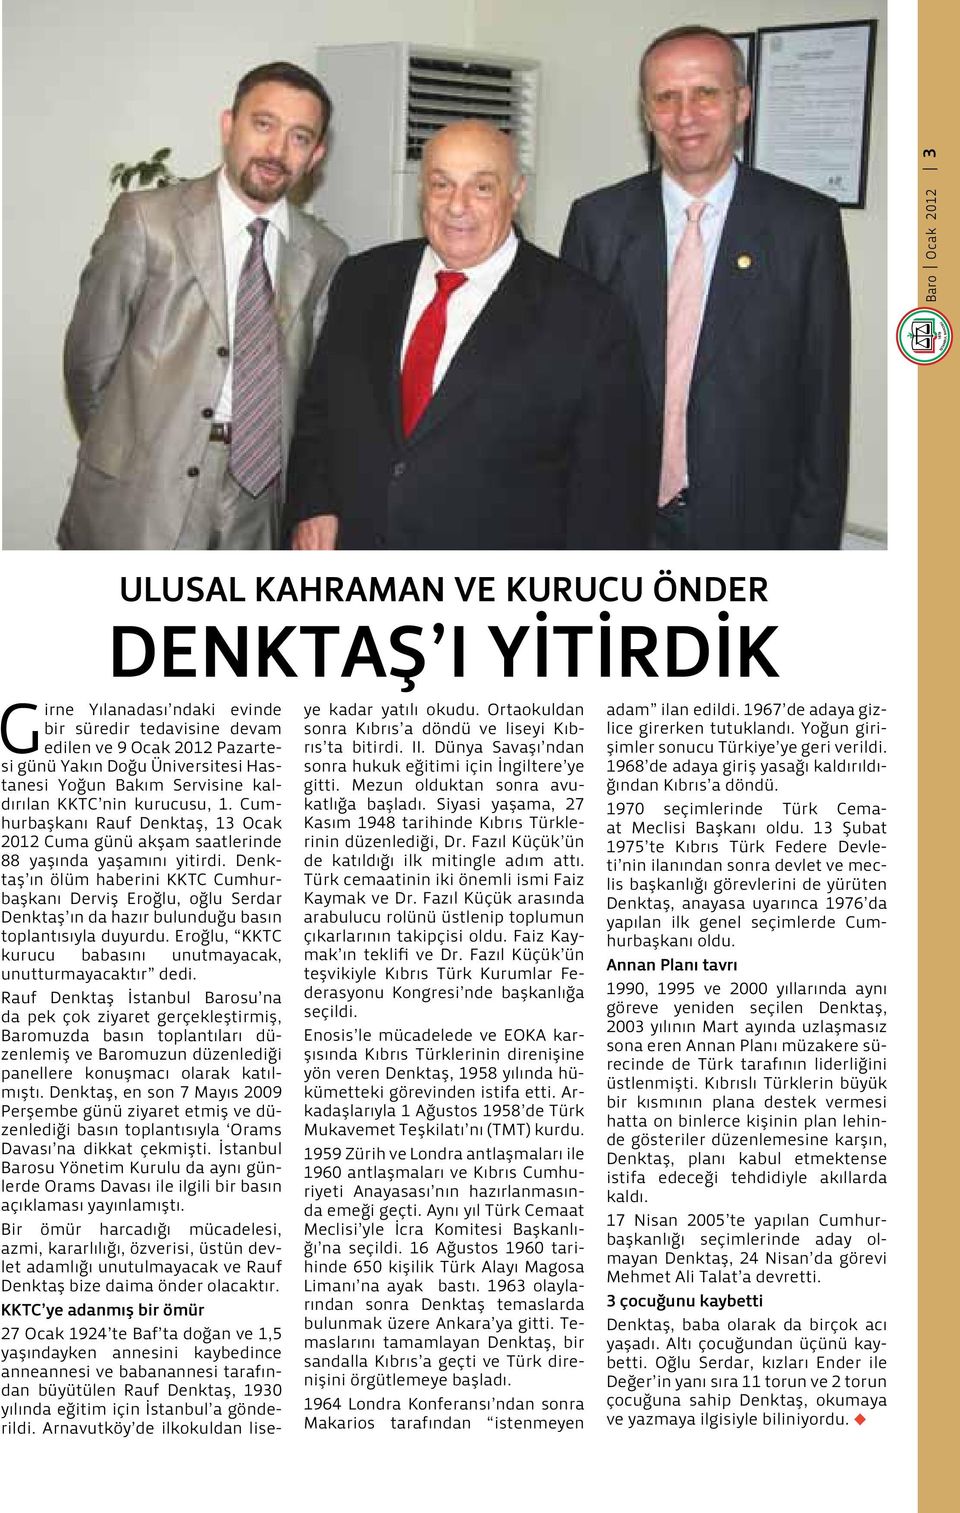 Denktaş ın ölüm haberini KKTC Cumhurbaşkanı Derviş Eroğlu, oğlu Serdar Denktaş ın da hazır bulunduğu basın toplantısıyla duyurdu. Eroğlu, KKTC kurucu babasını unutmayacak, unutturmayacaktır dedi.